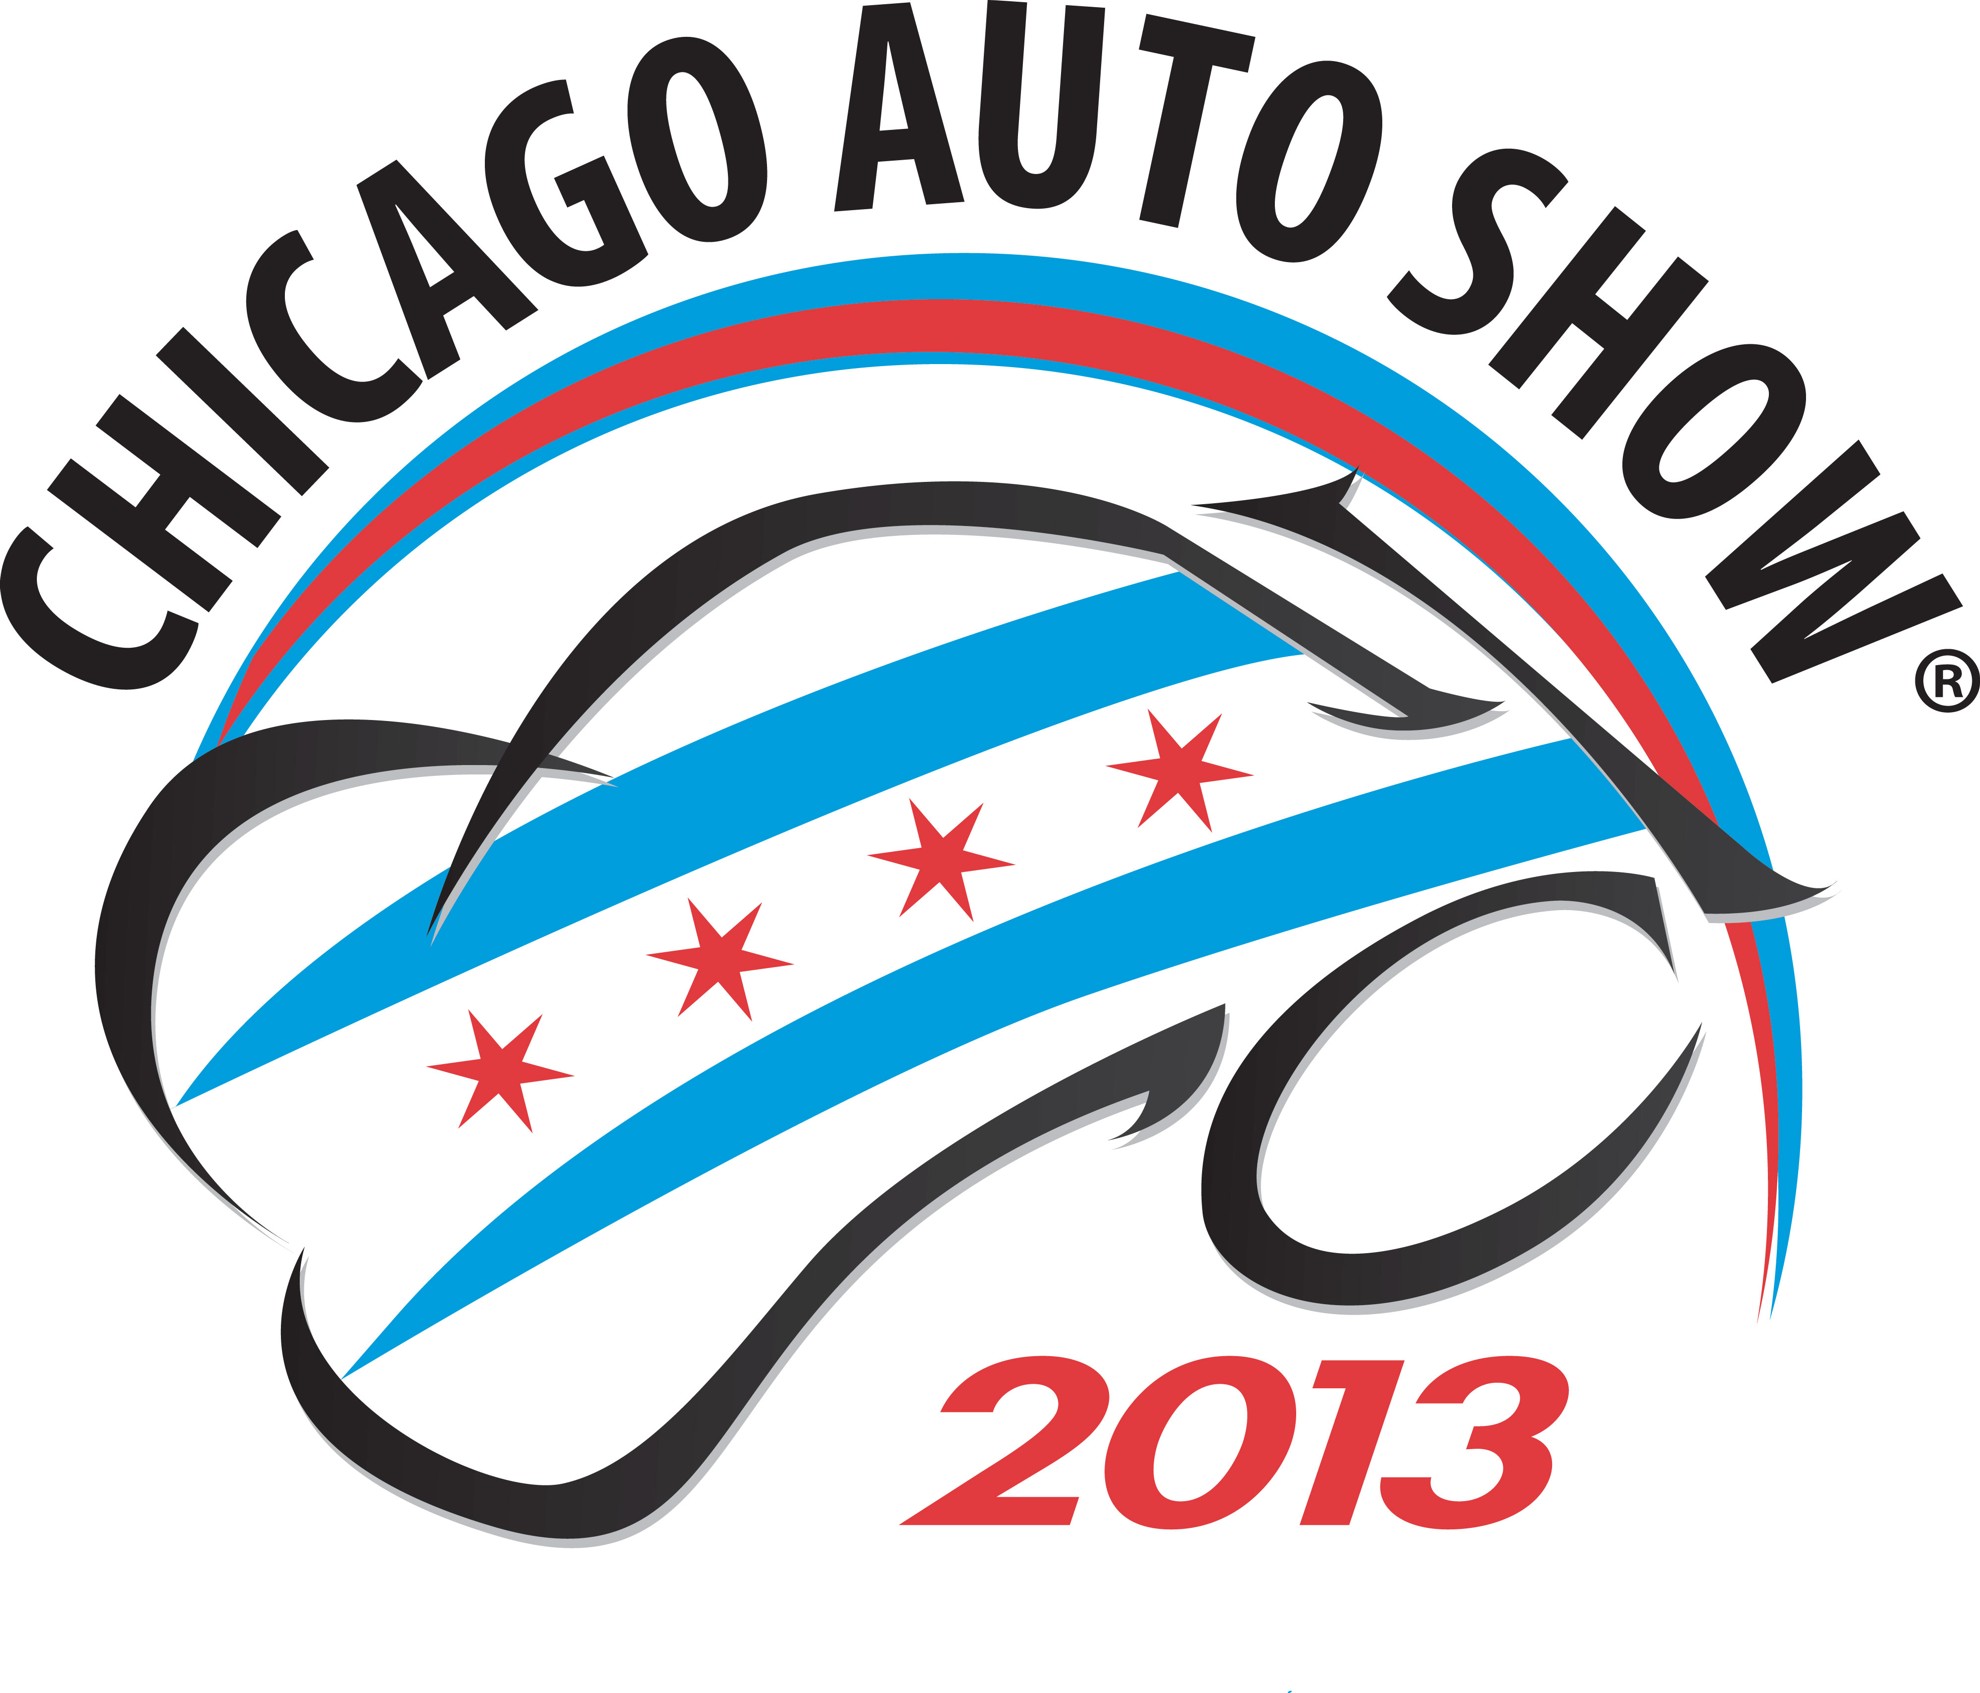 Mobile Car Show Application for Chicago Auto Show